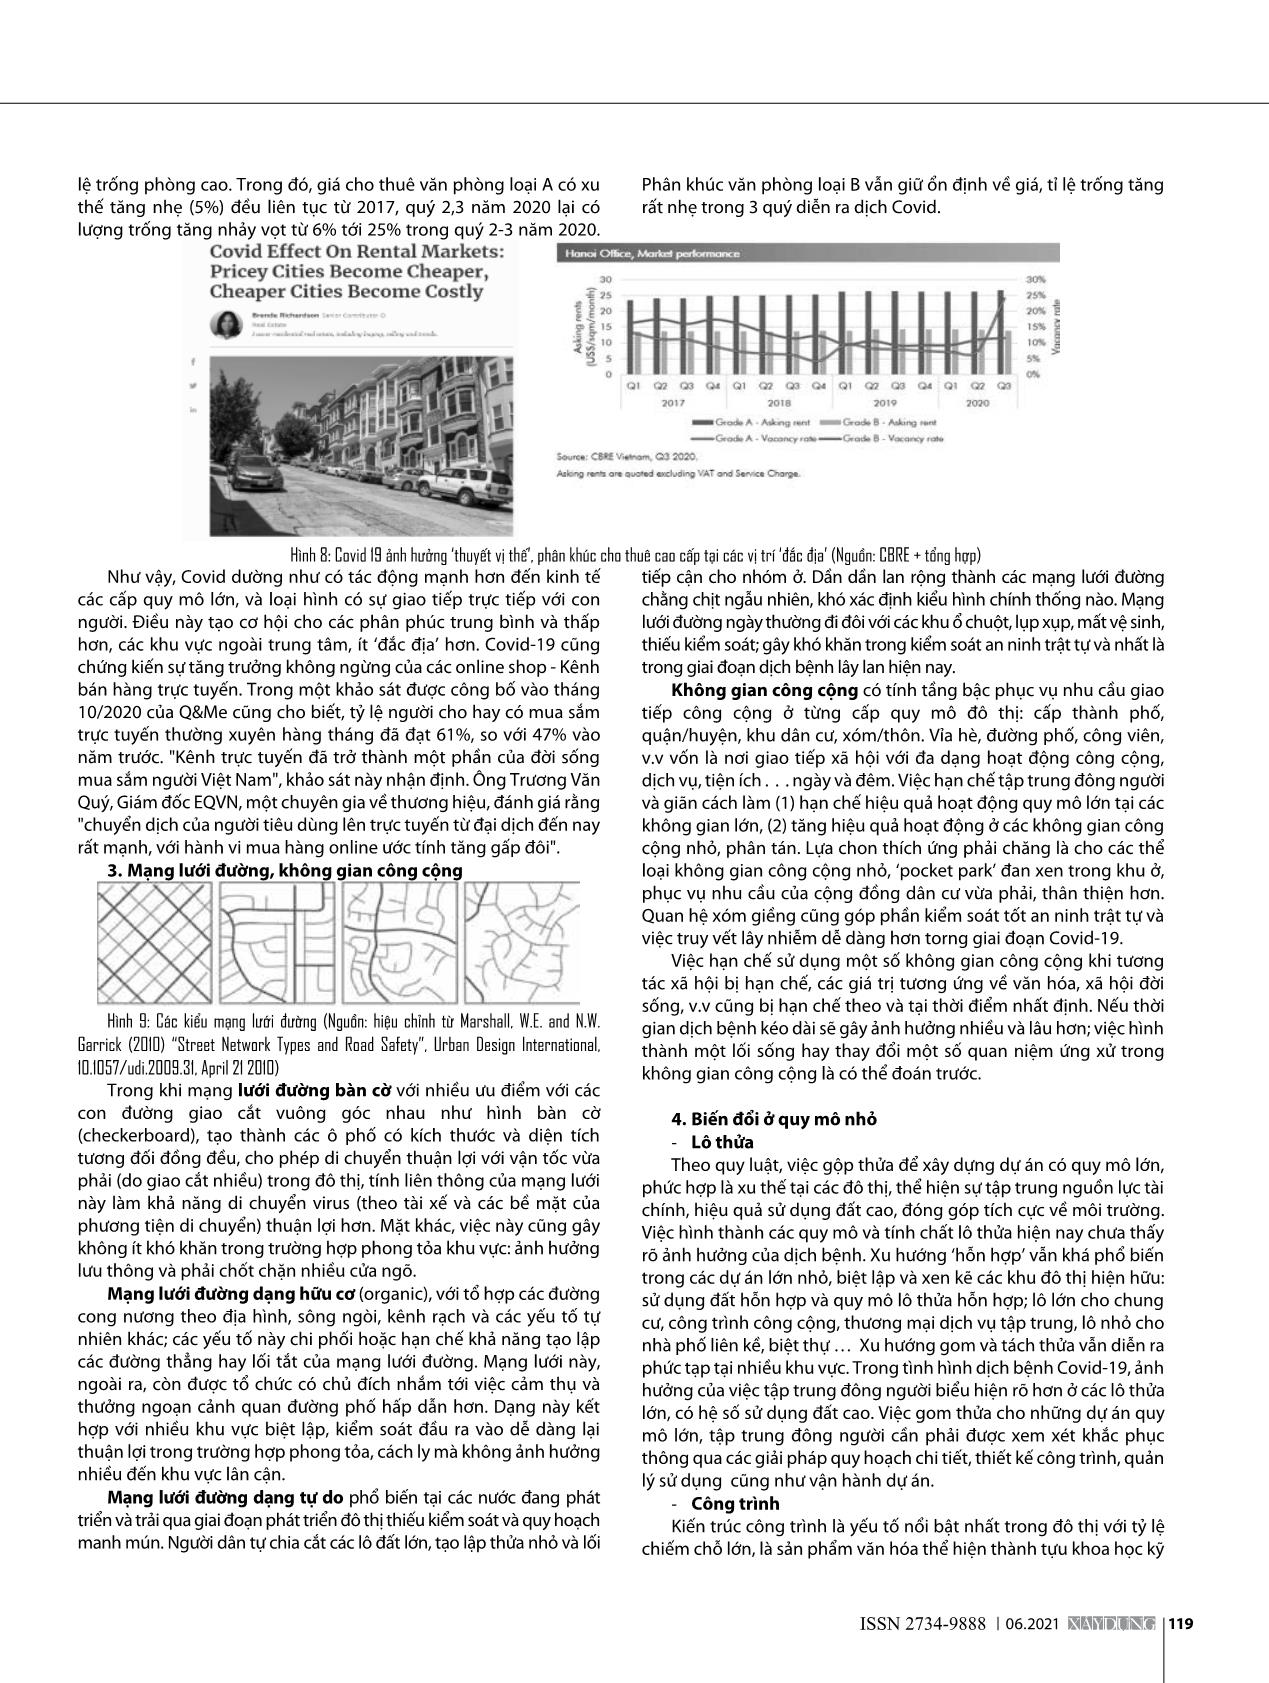 Sự biến đổi đô thị trong giai đoạn Covid-19 trang 4